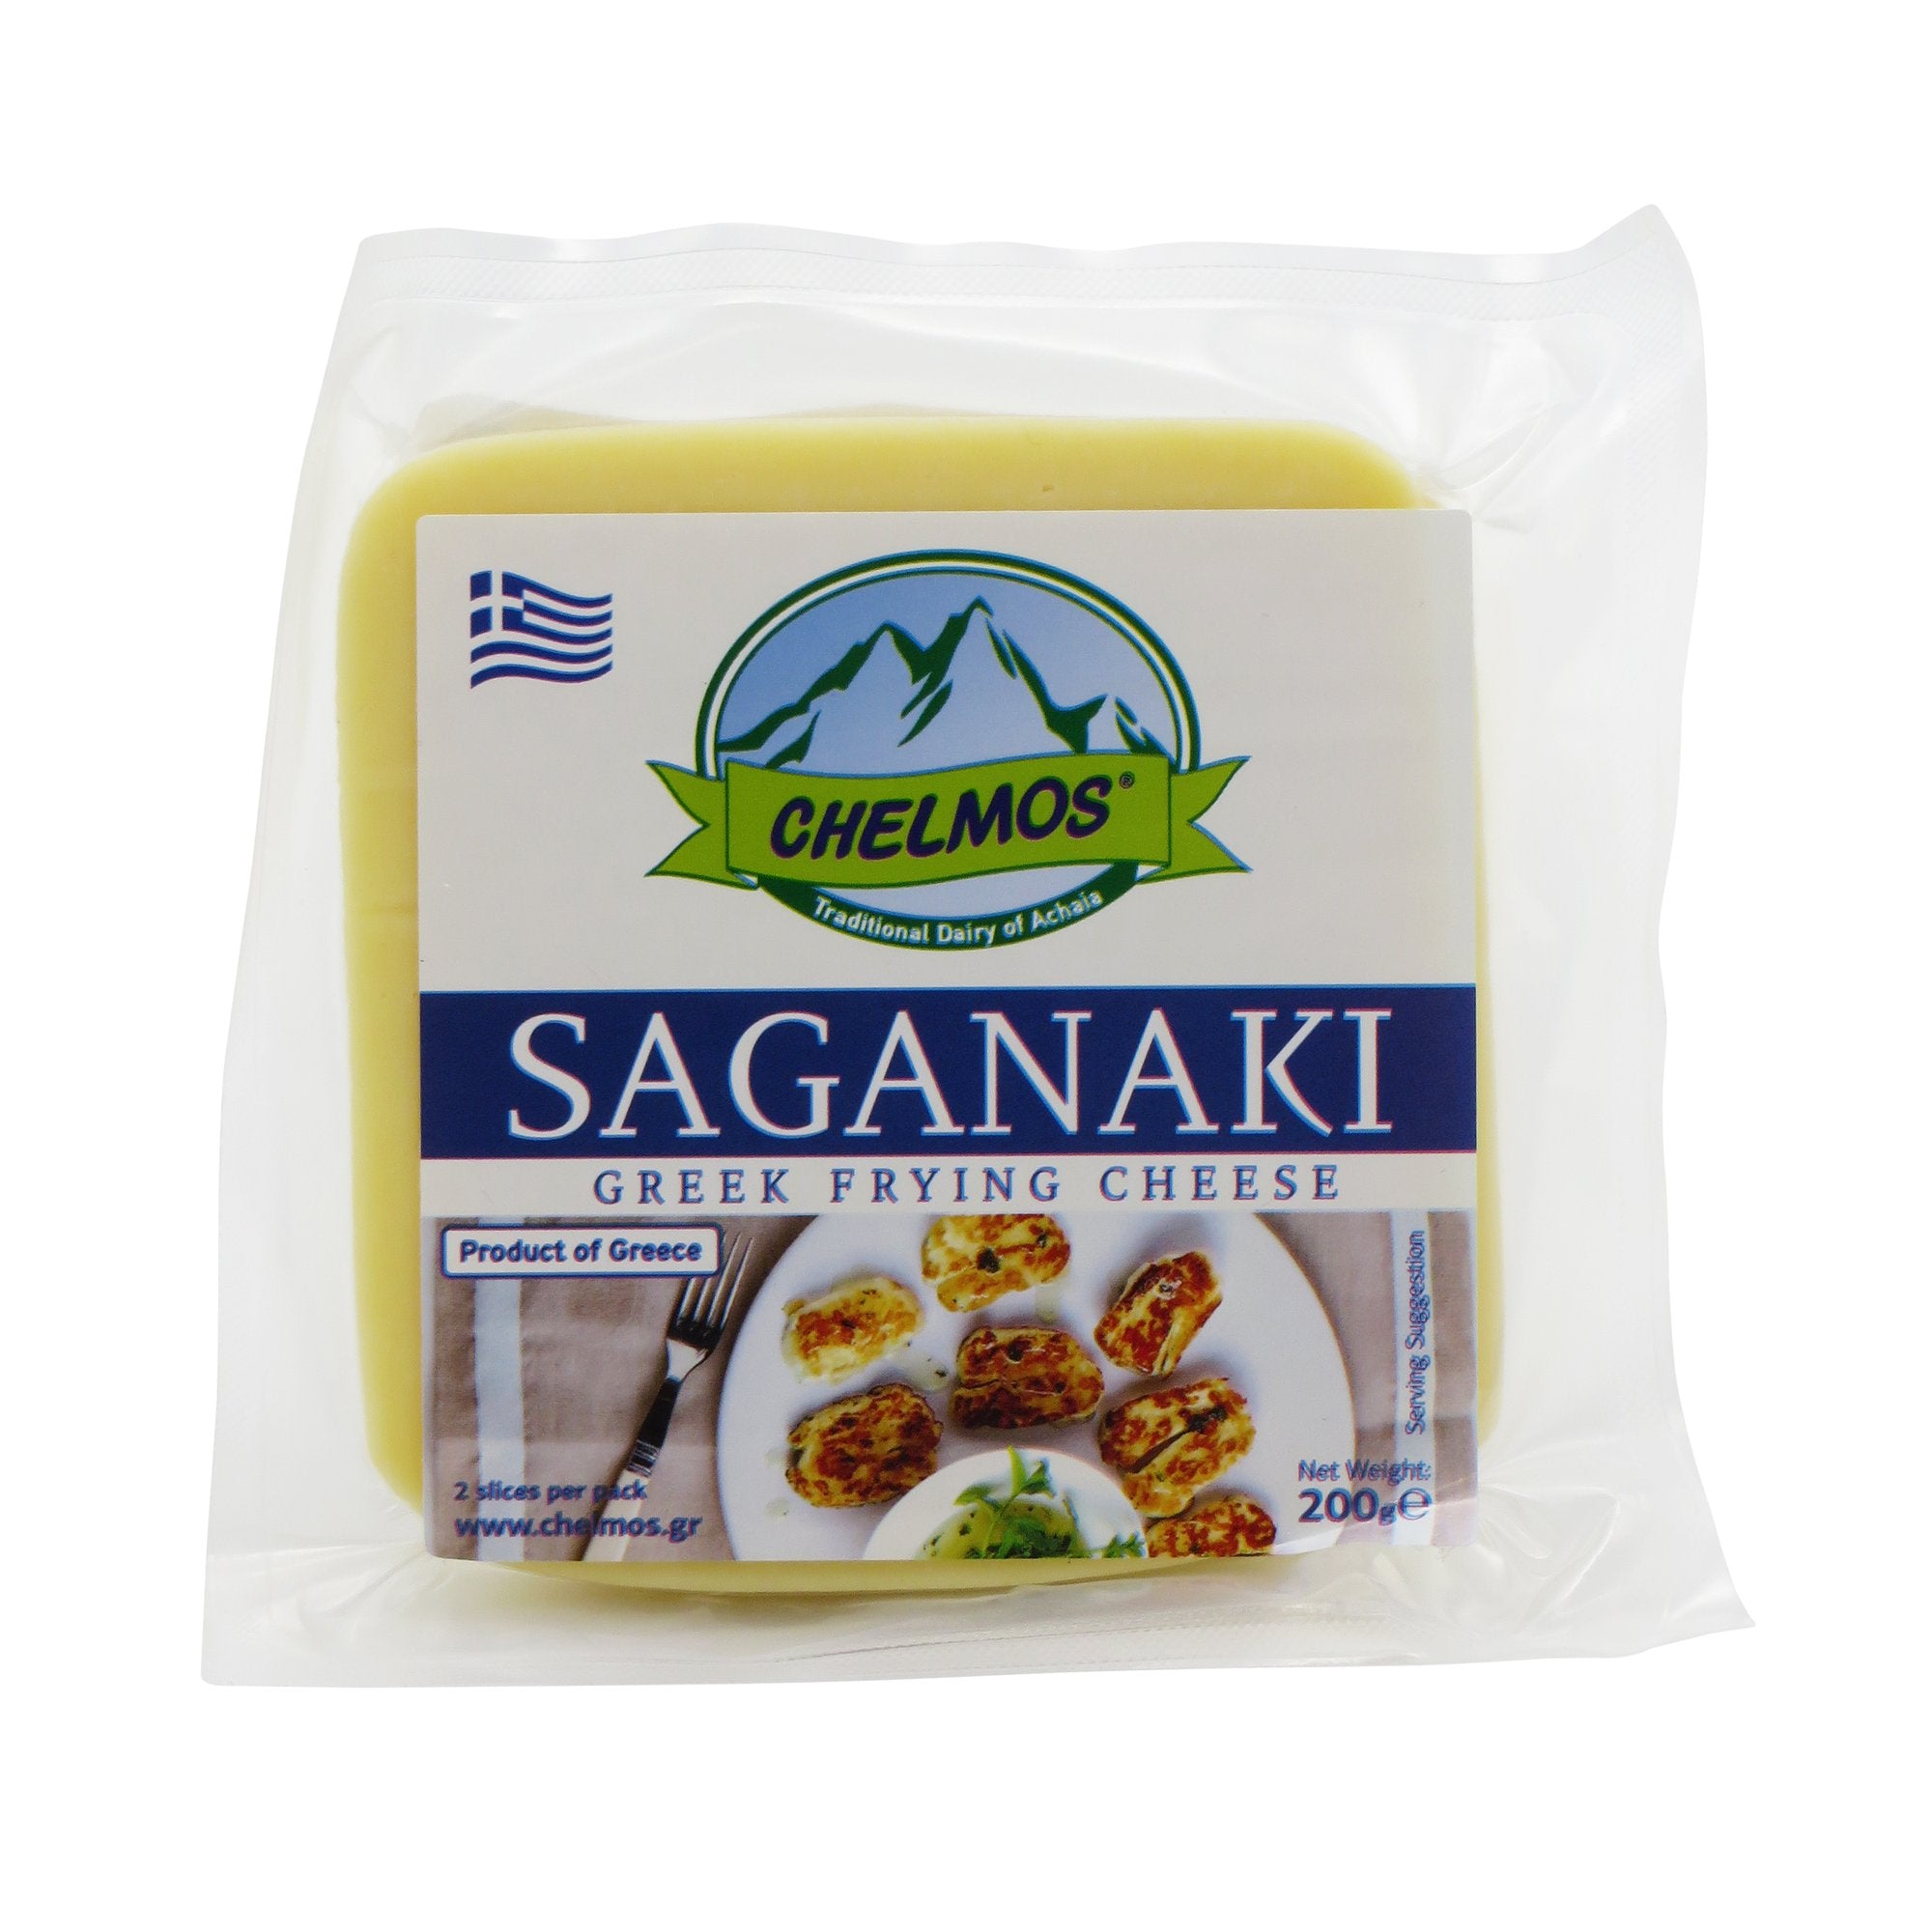 CHELMOS Saganaki Cheese 200g